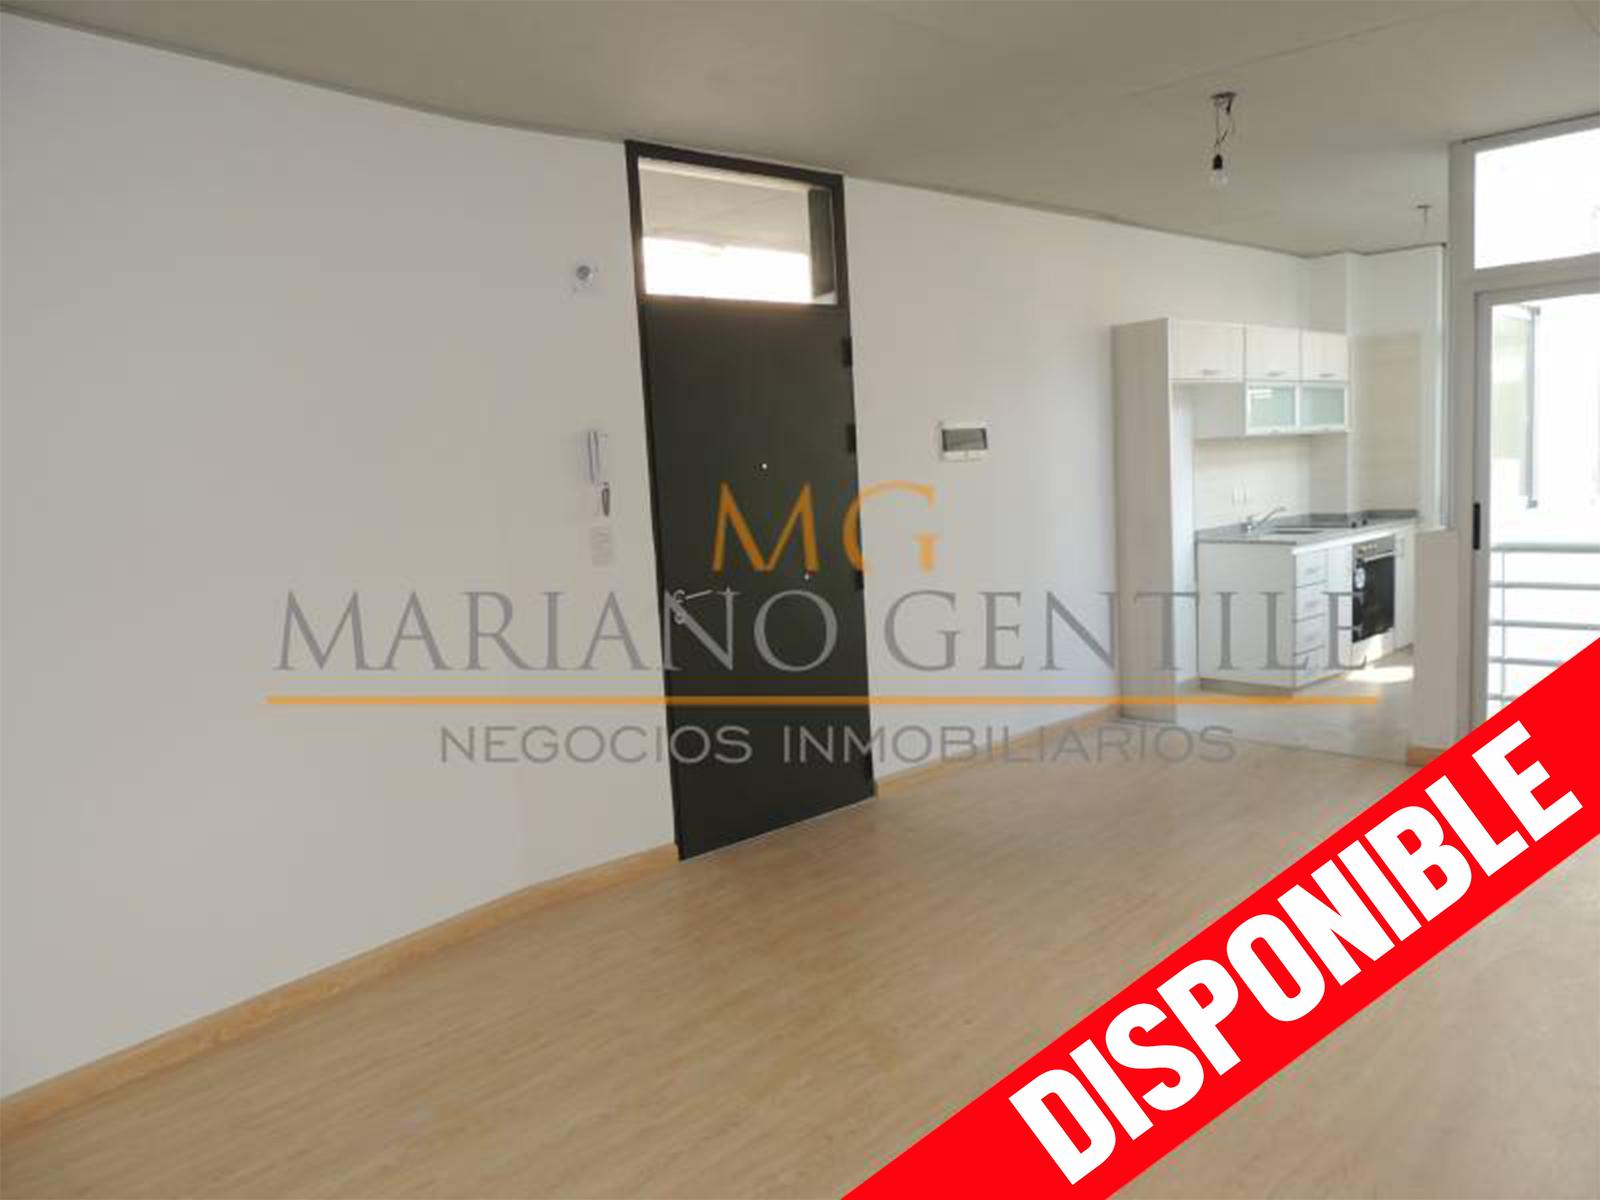 #5077665 | Rental | Apartment | Almagro (MARIANO GENTILE | Negocios Inmobiliarios)